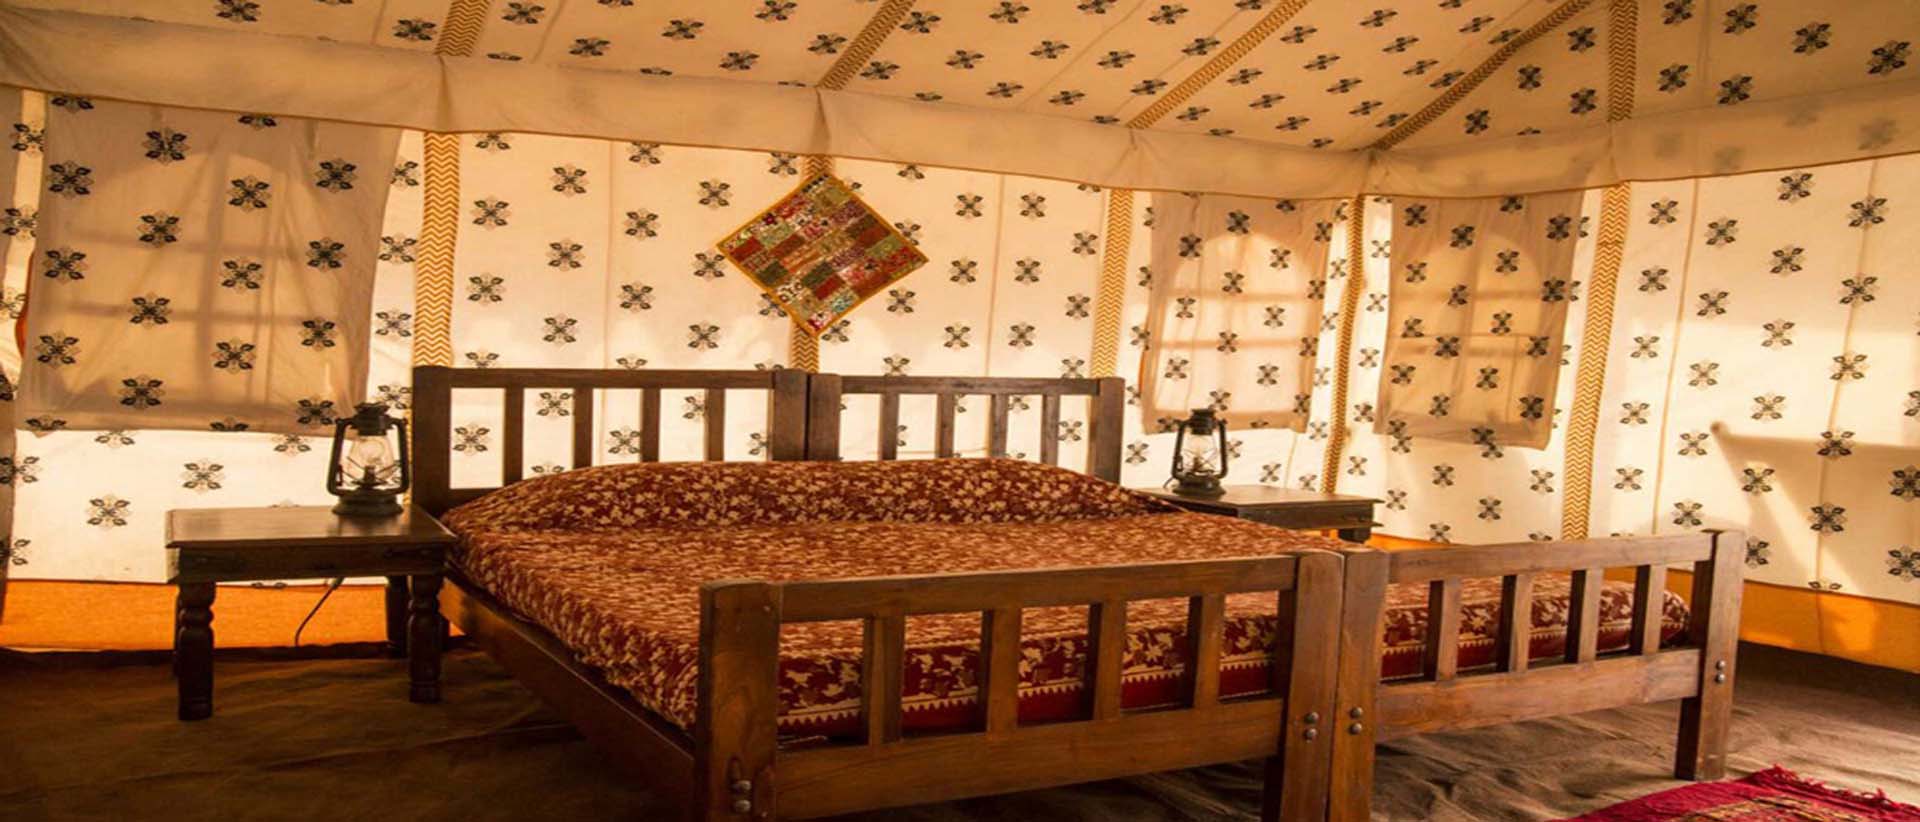 camp pushkar,desert camp,tent pushkar,fair accomodation,Luxury camp, Pushkar Tented Accommodation,tent pushkar,Fair Camp Pushkar